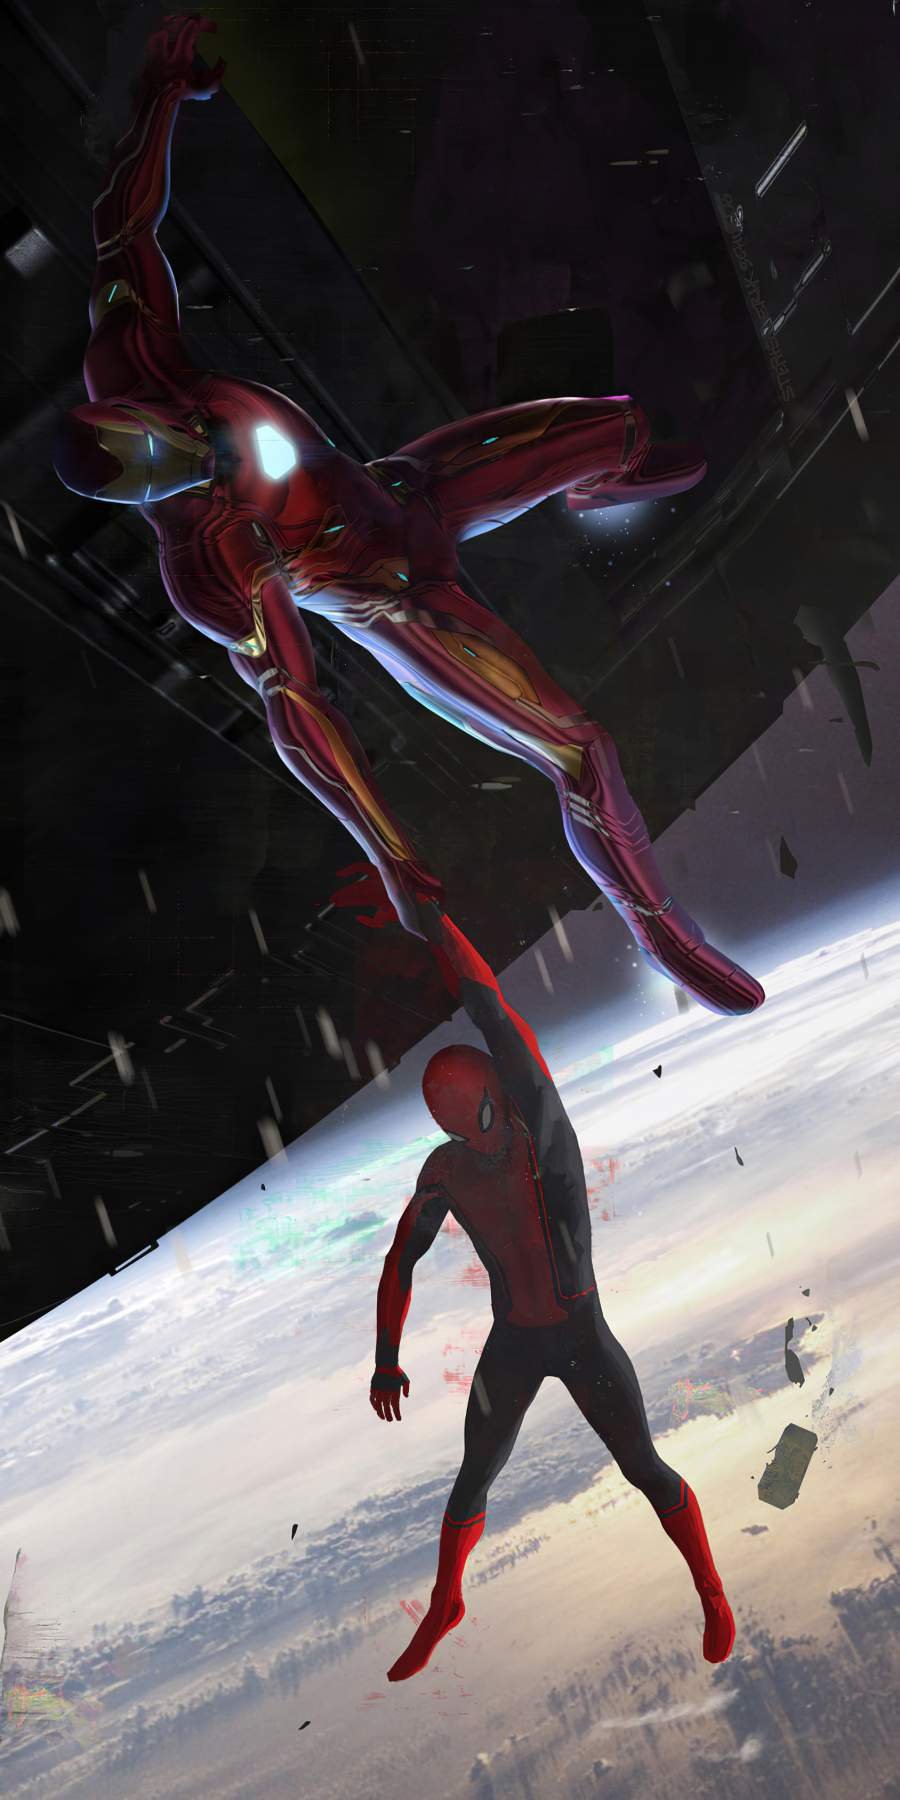 Iron man saving spider man